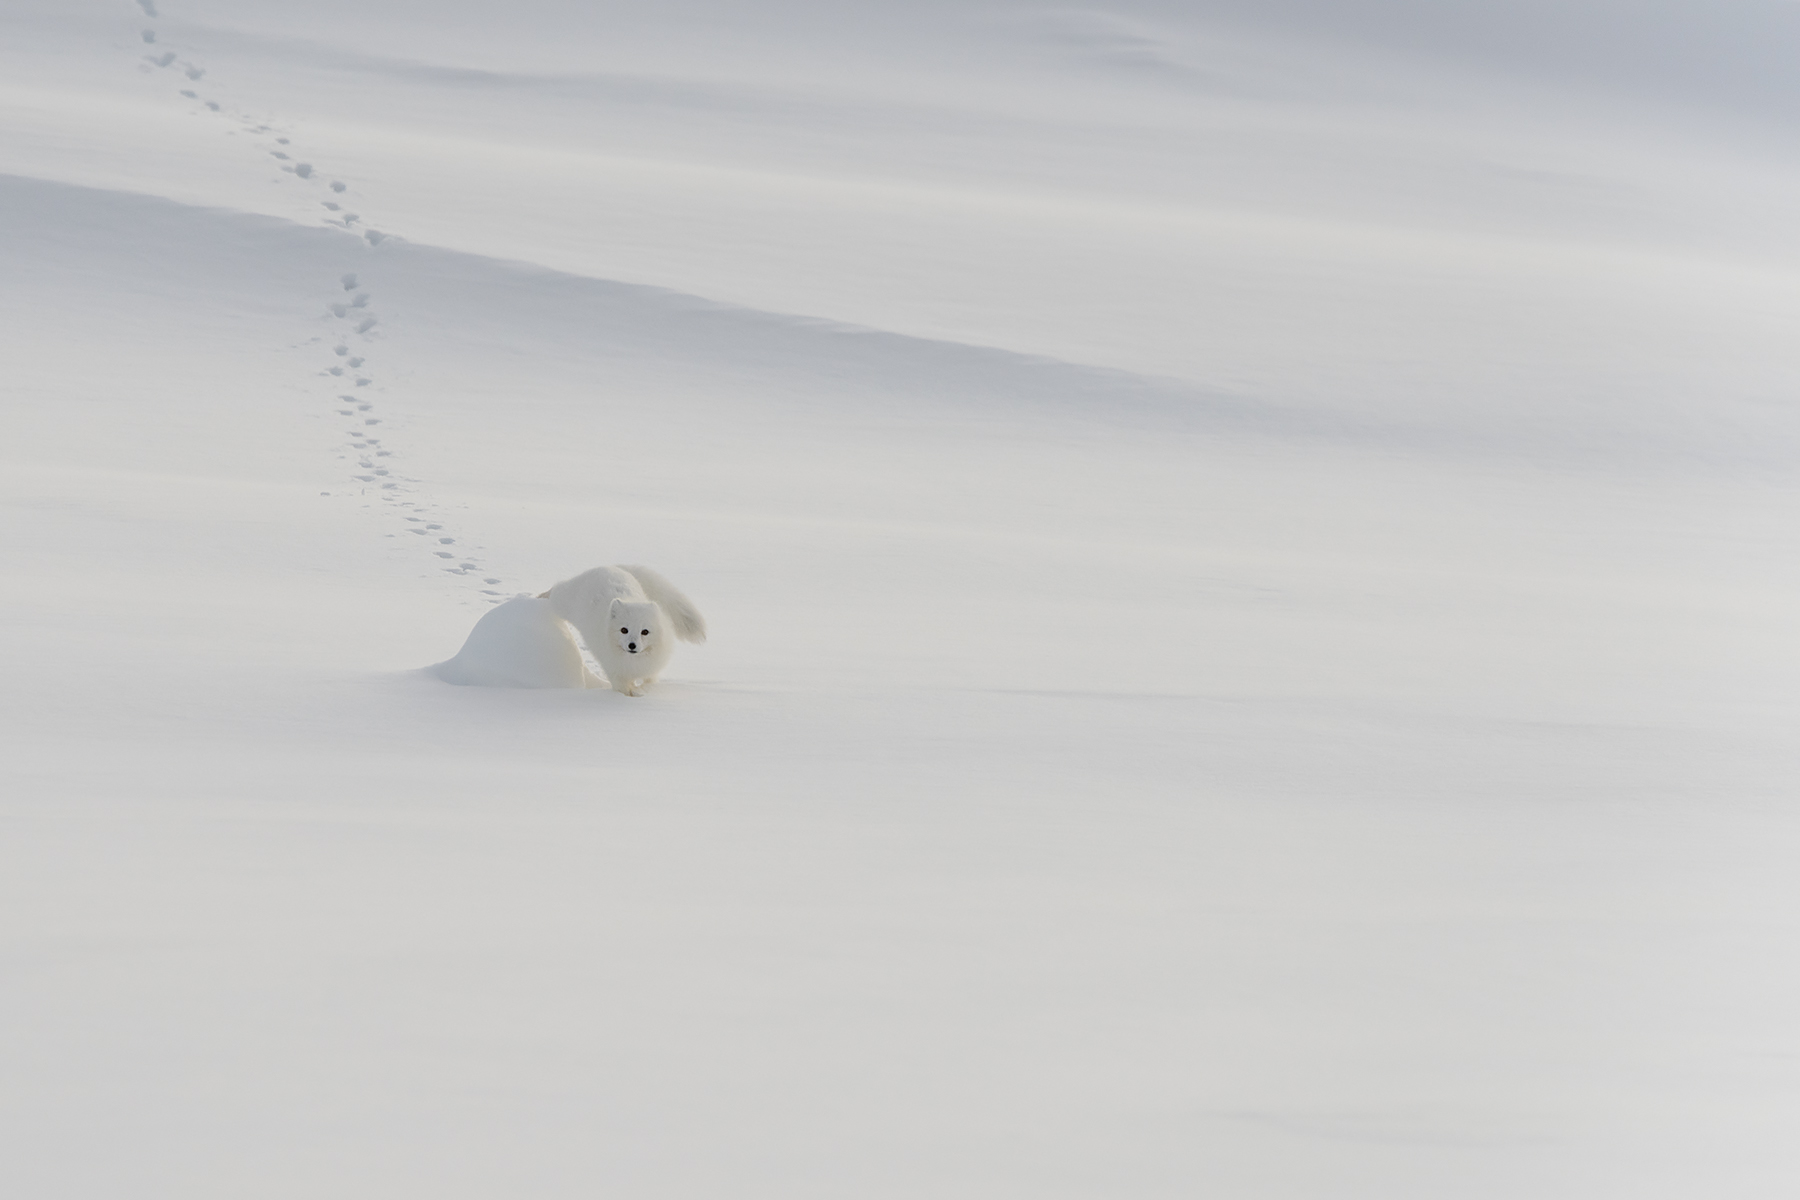 Polarræv fra Svalbard...